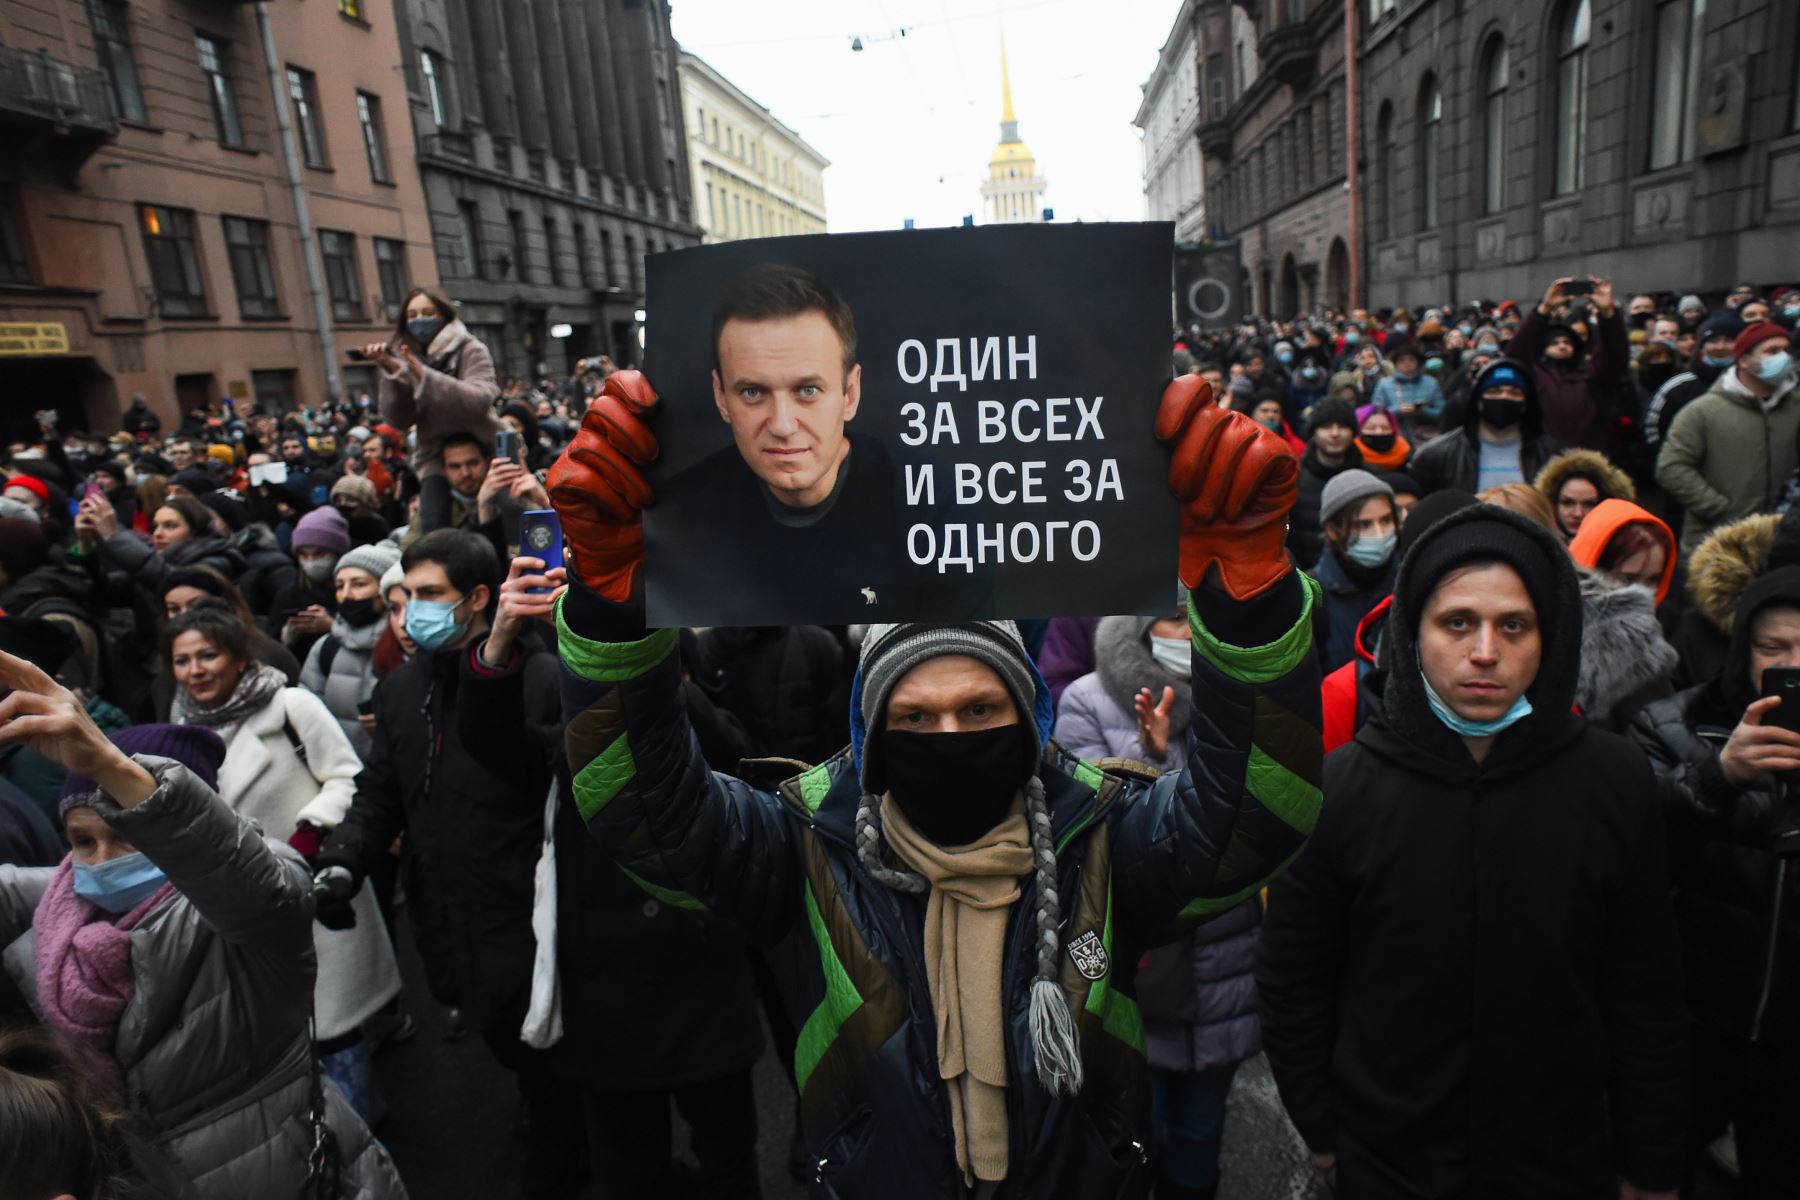 Manifestación en apoyo del líder opositor encarcelado Alexei Navalny en San Petersburgo. El cartel dice "Uno para todos y todos para uno". Foto: AFP